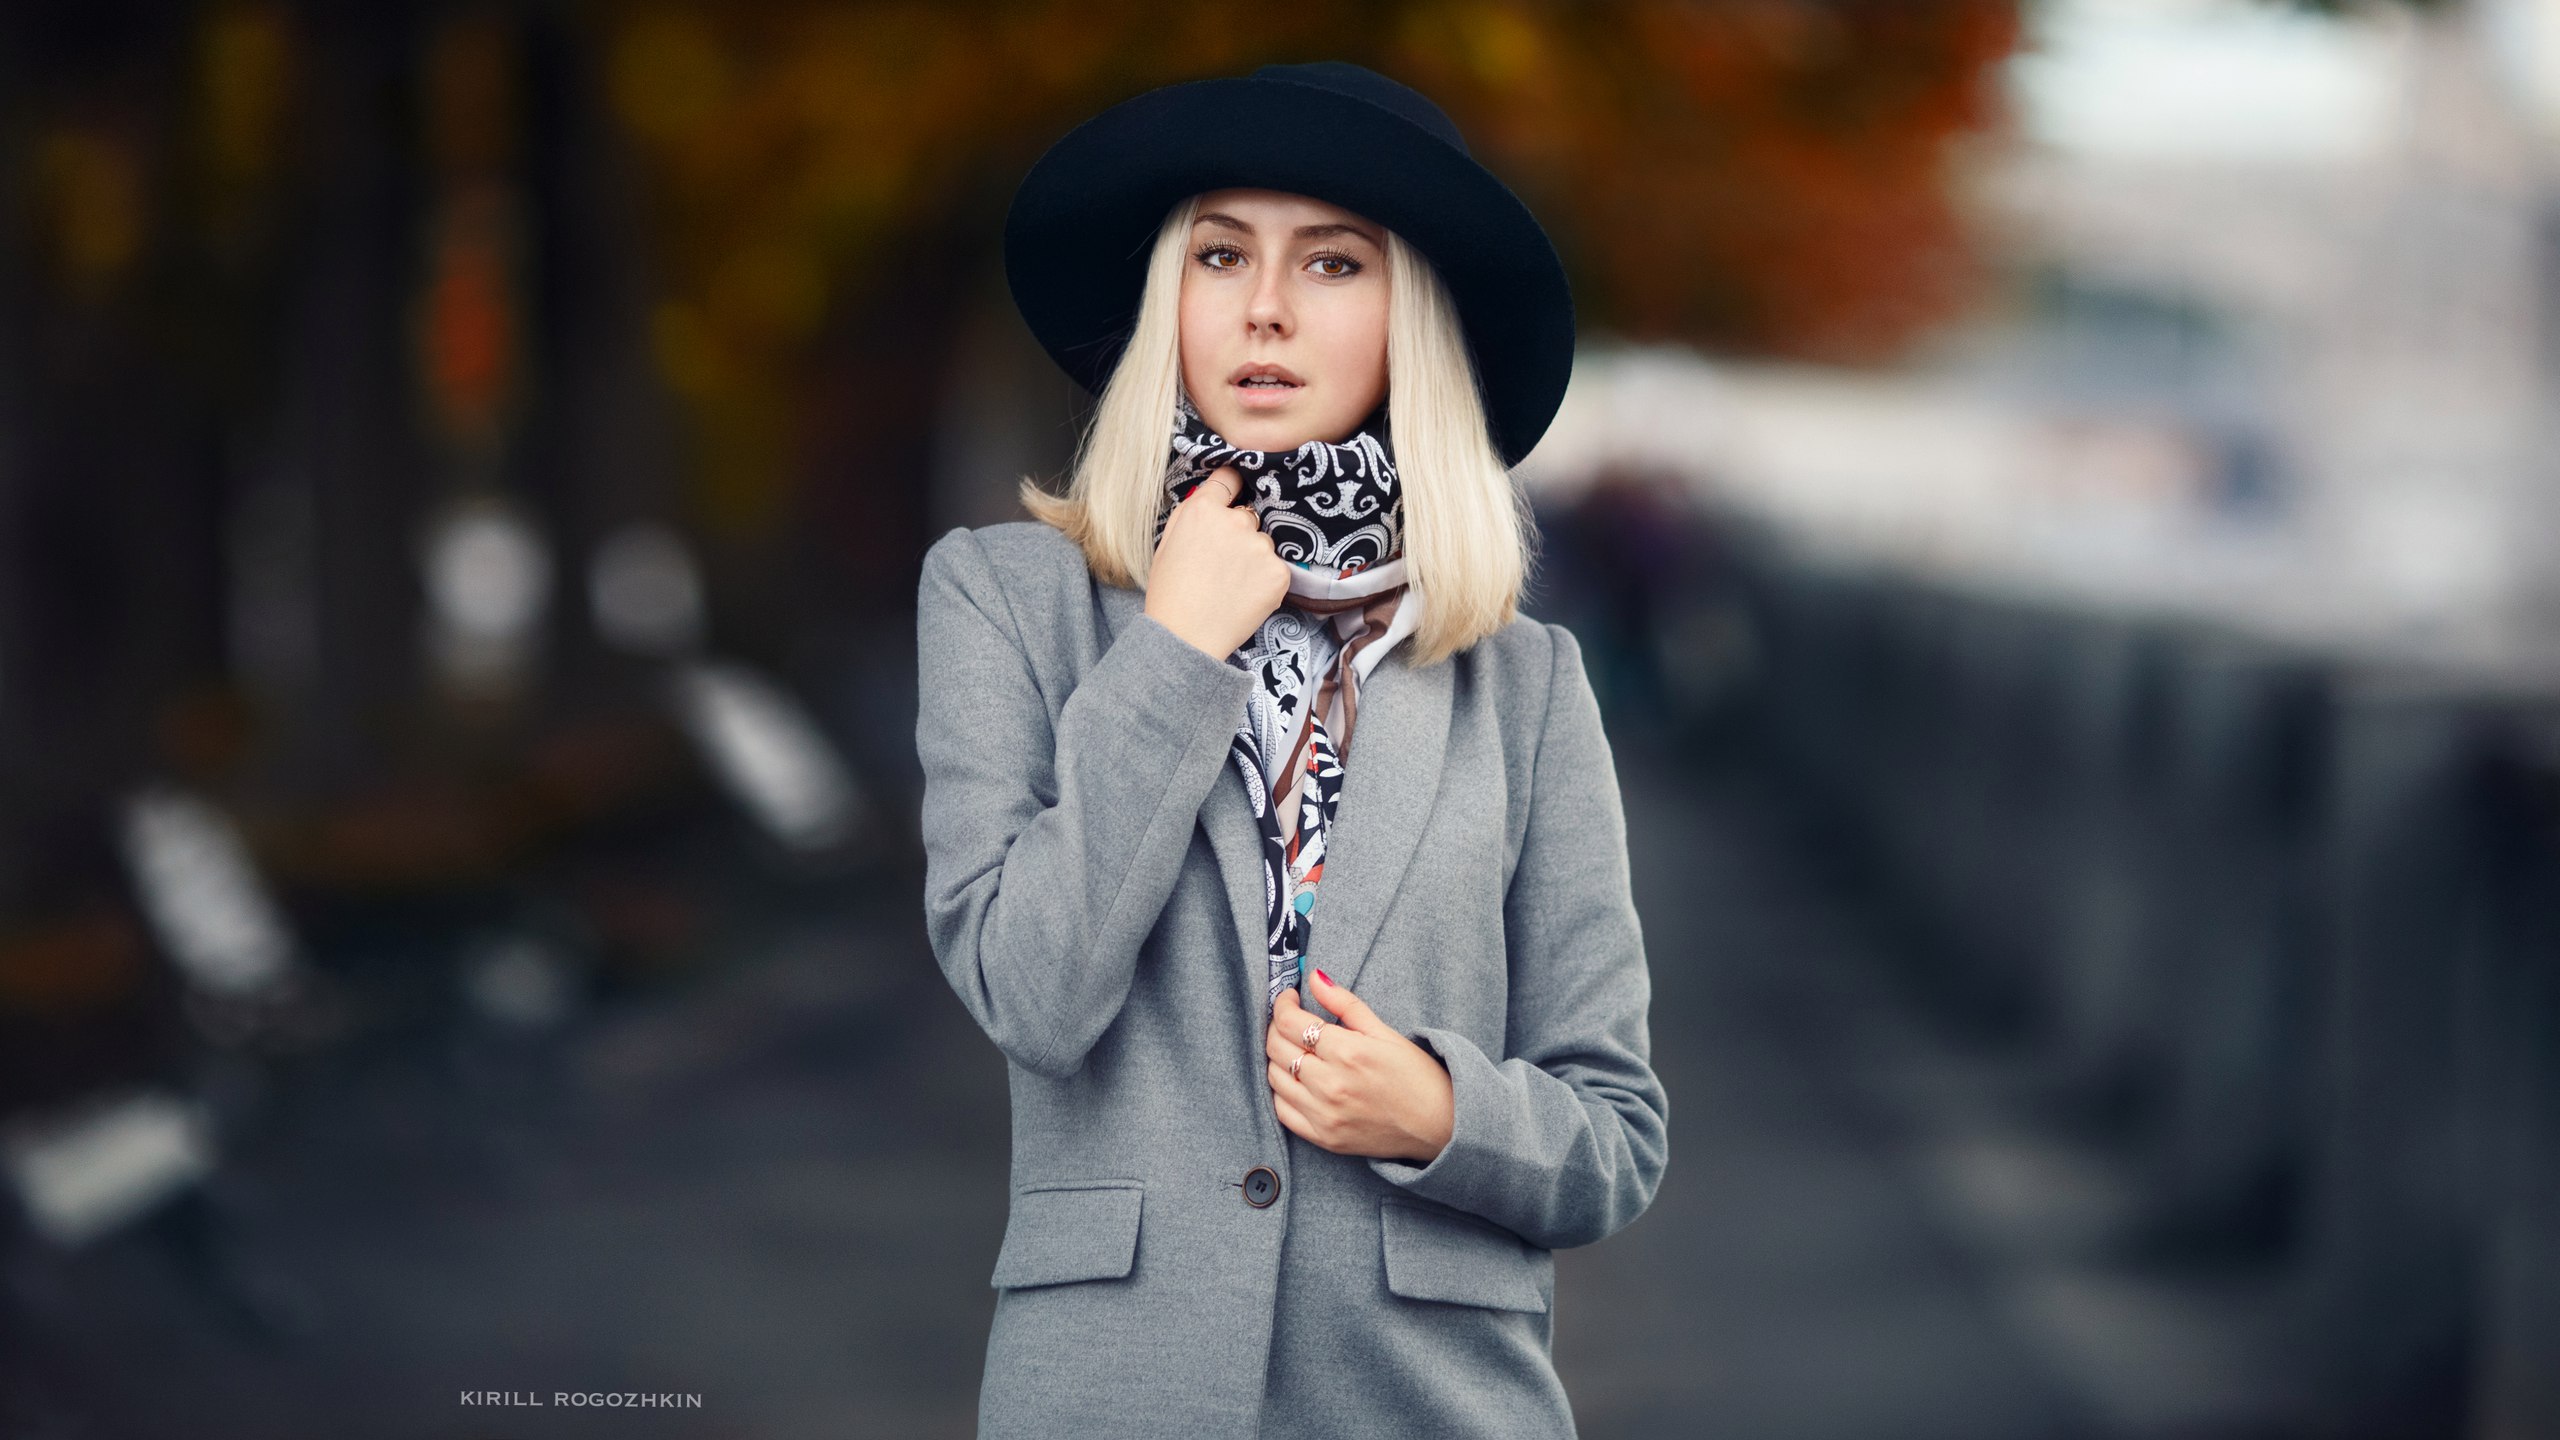 People 2560x1440 Kirill Rogozhkin women blonde long hair hat face women outdoors grey coat coats